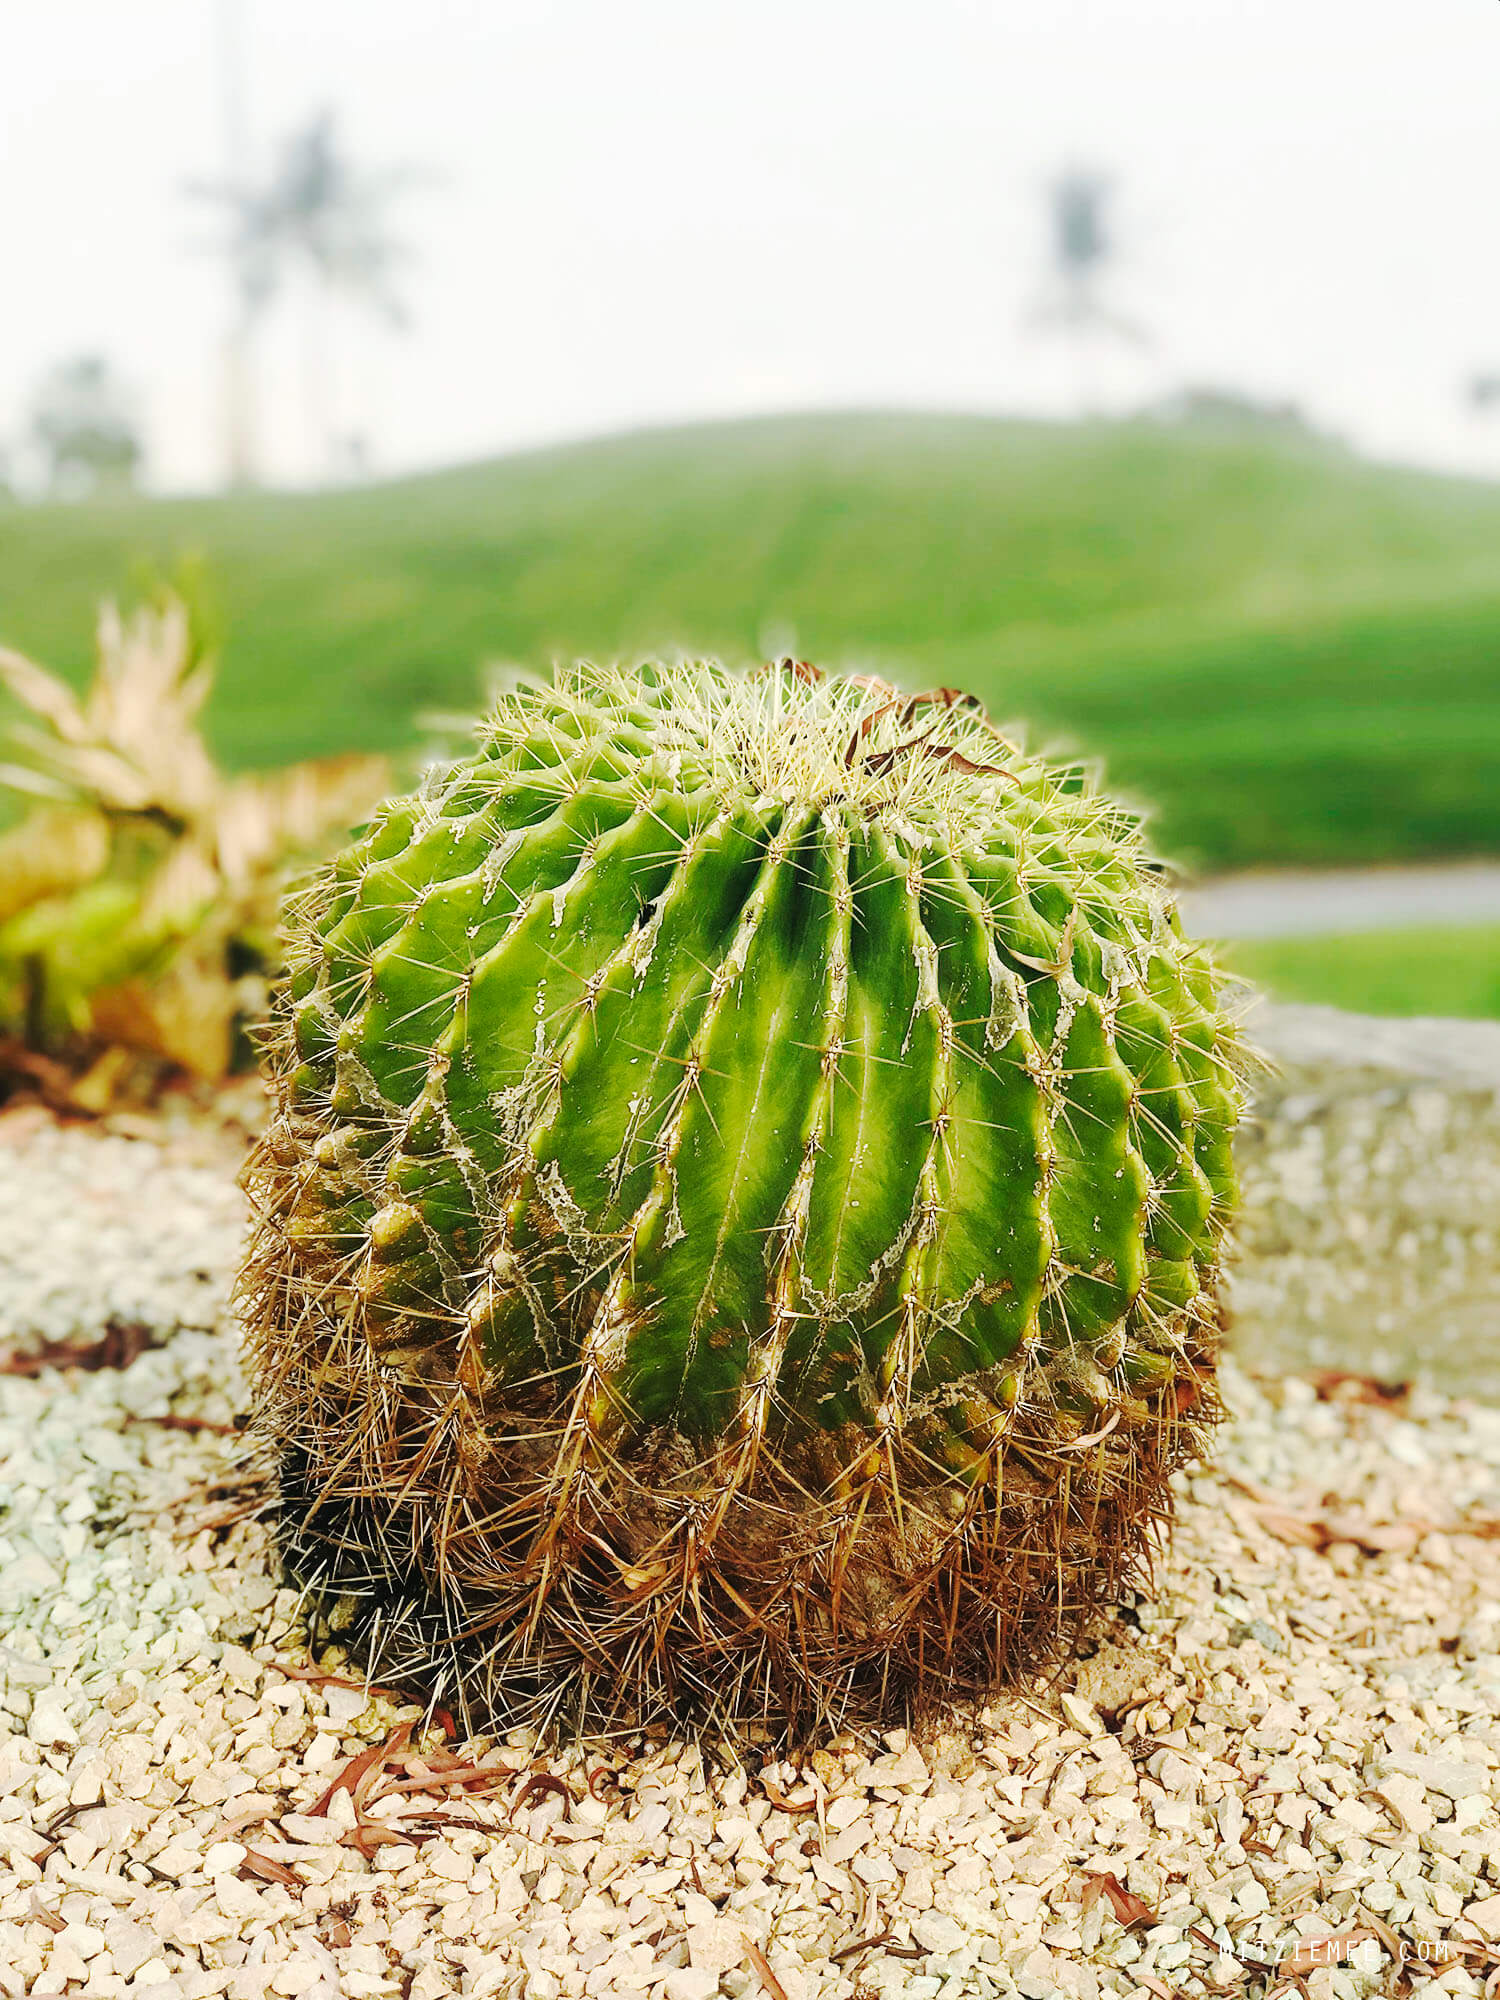 Cactus at Emirates Golf Club, Dubai